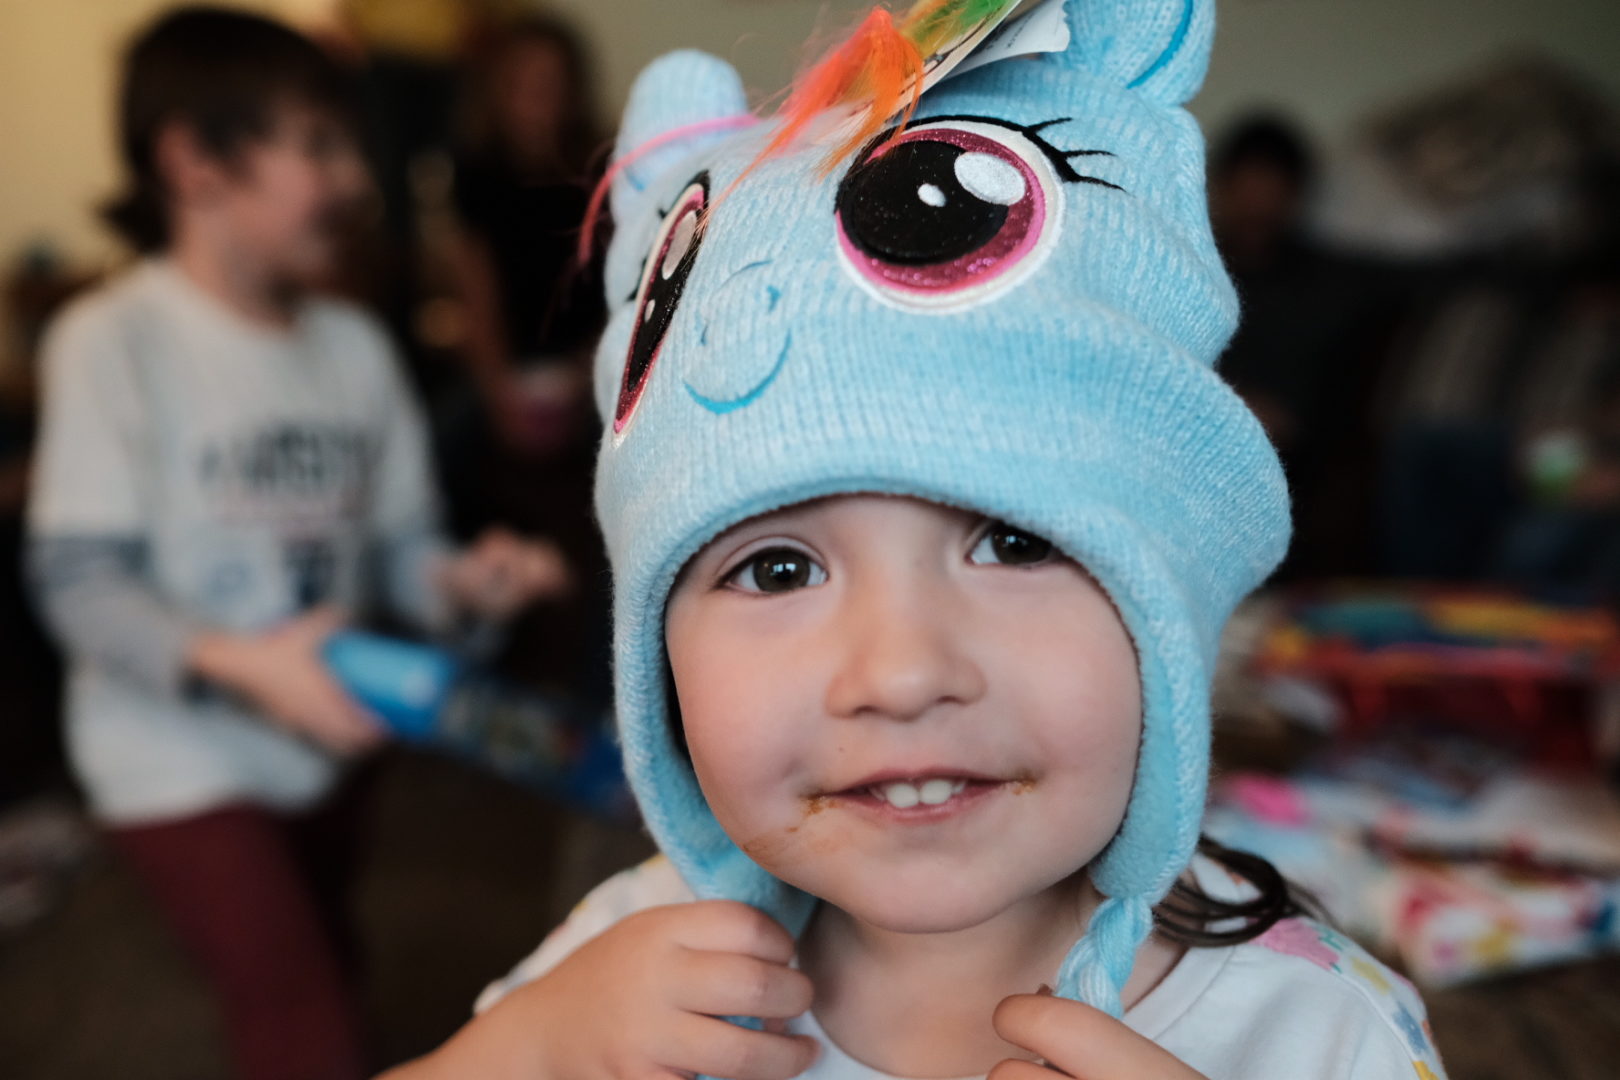 A little girl wearing a My Little Pony hat